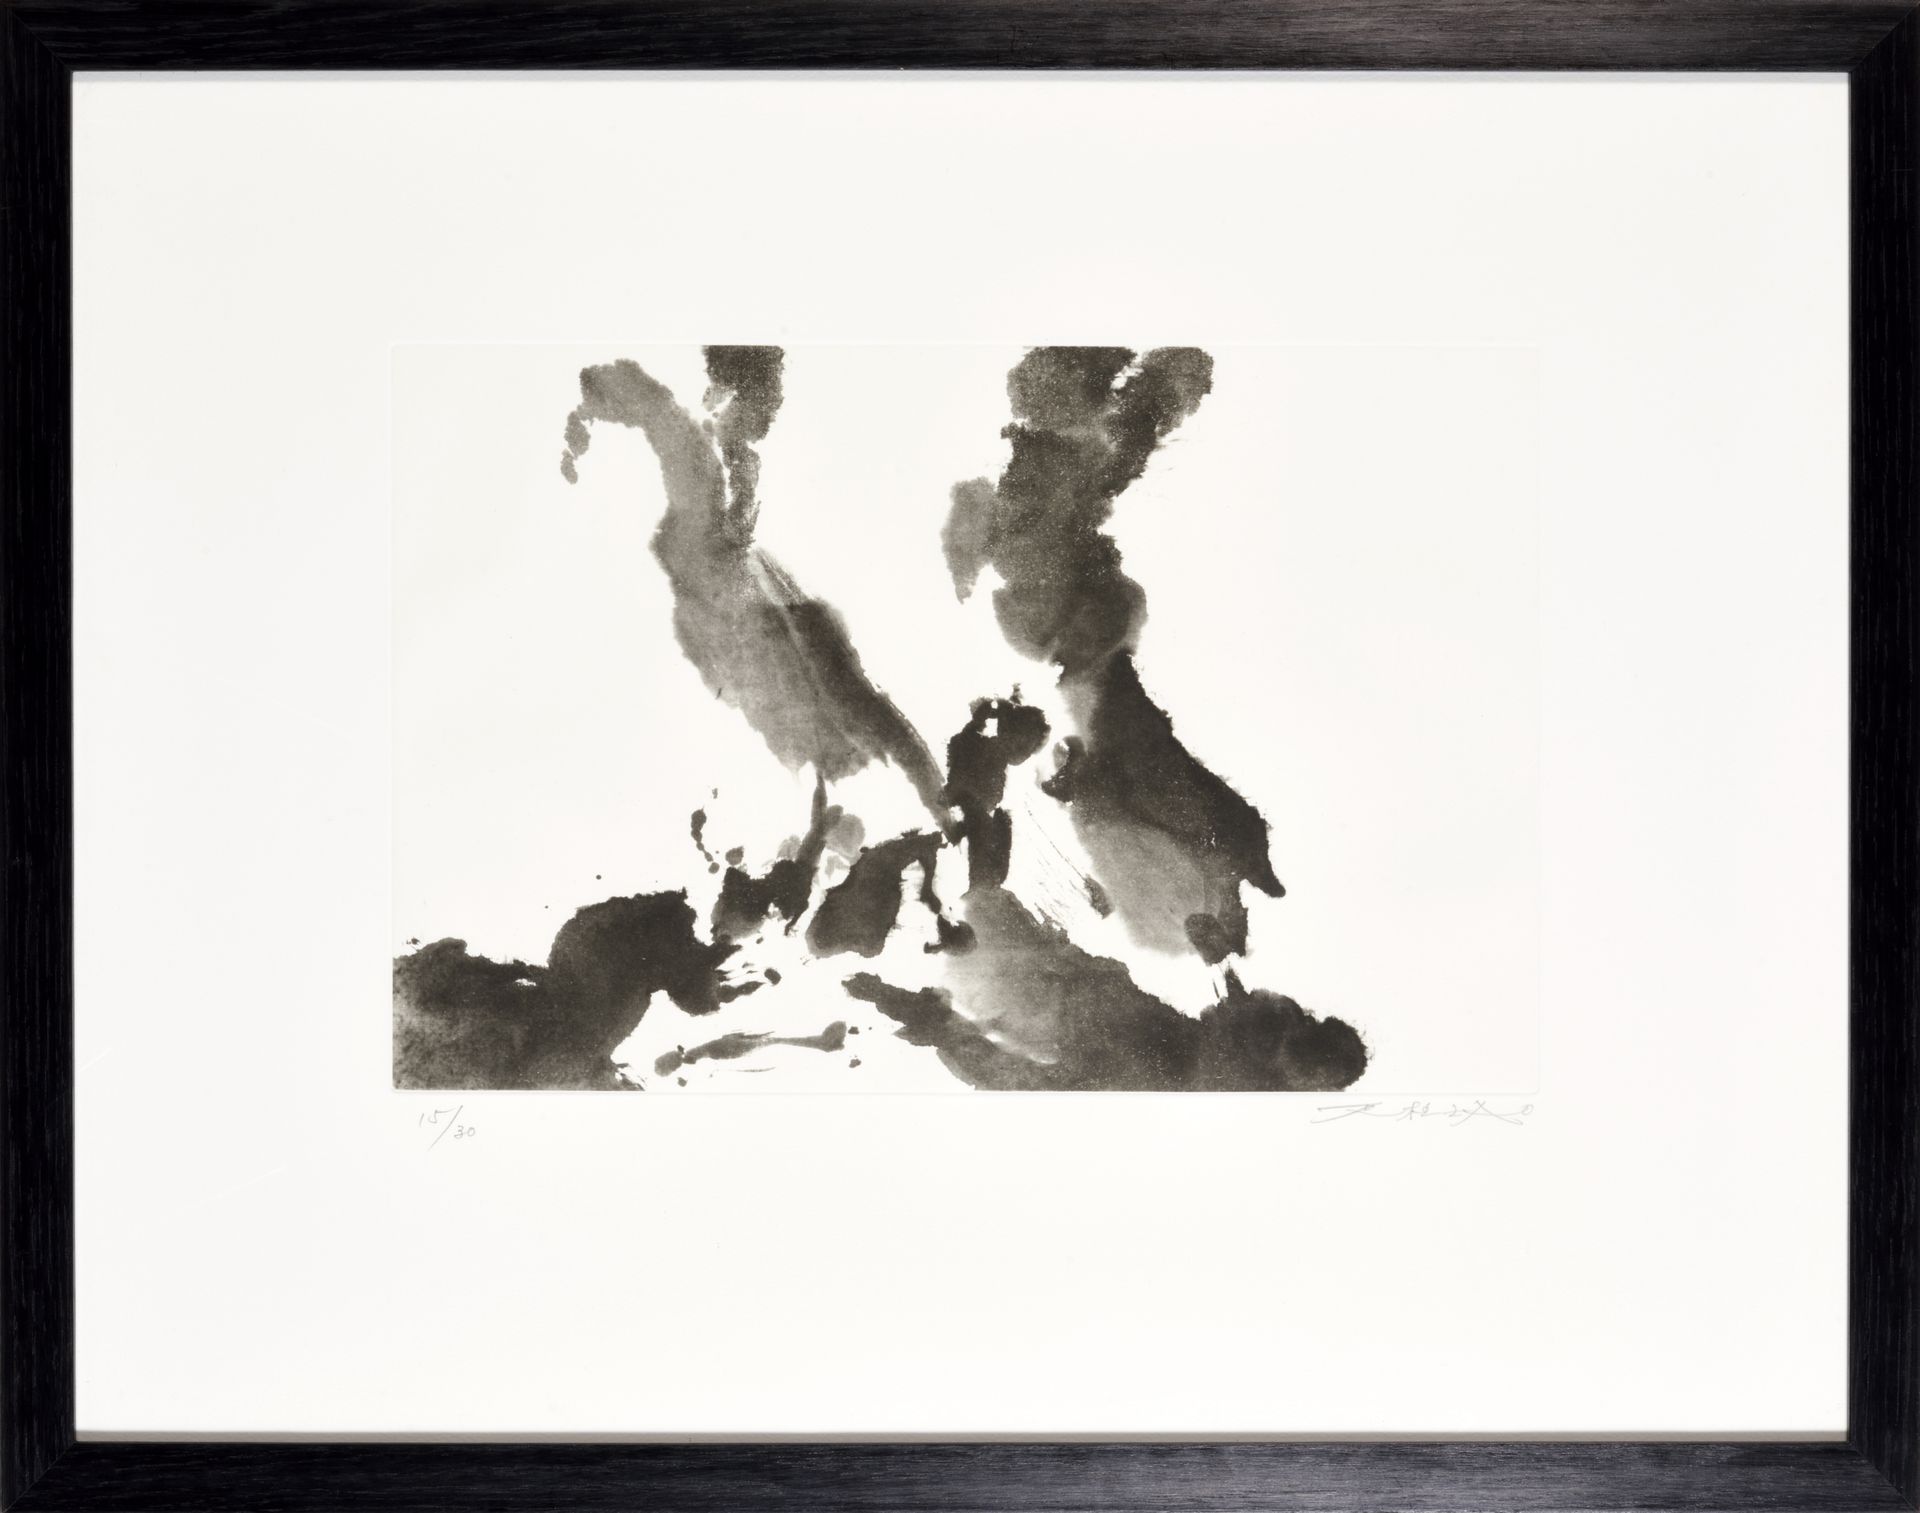 ZAO WOU-KI (1920-2013 ) ZAO WOU-KI (1920-2013)

UNTITLED

Black etching on paper&hellip;